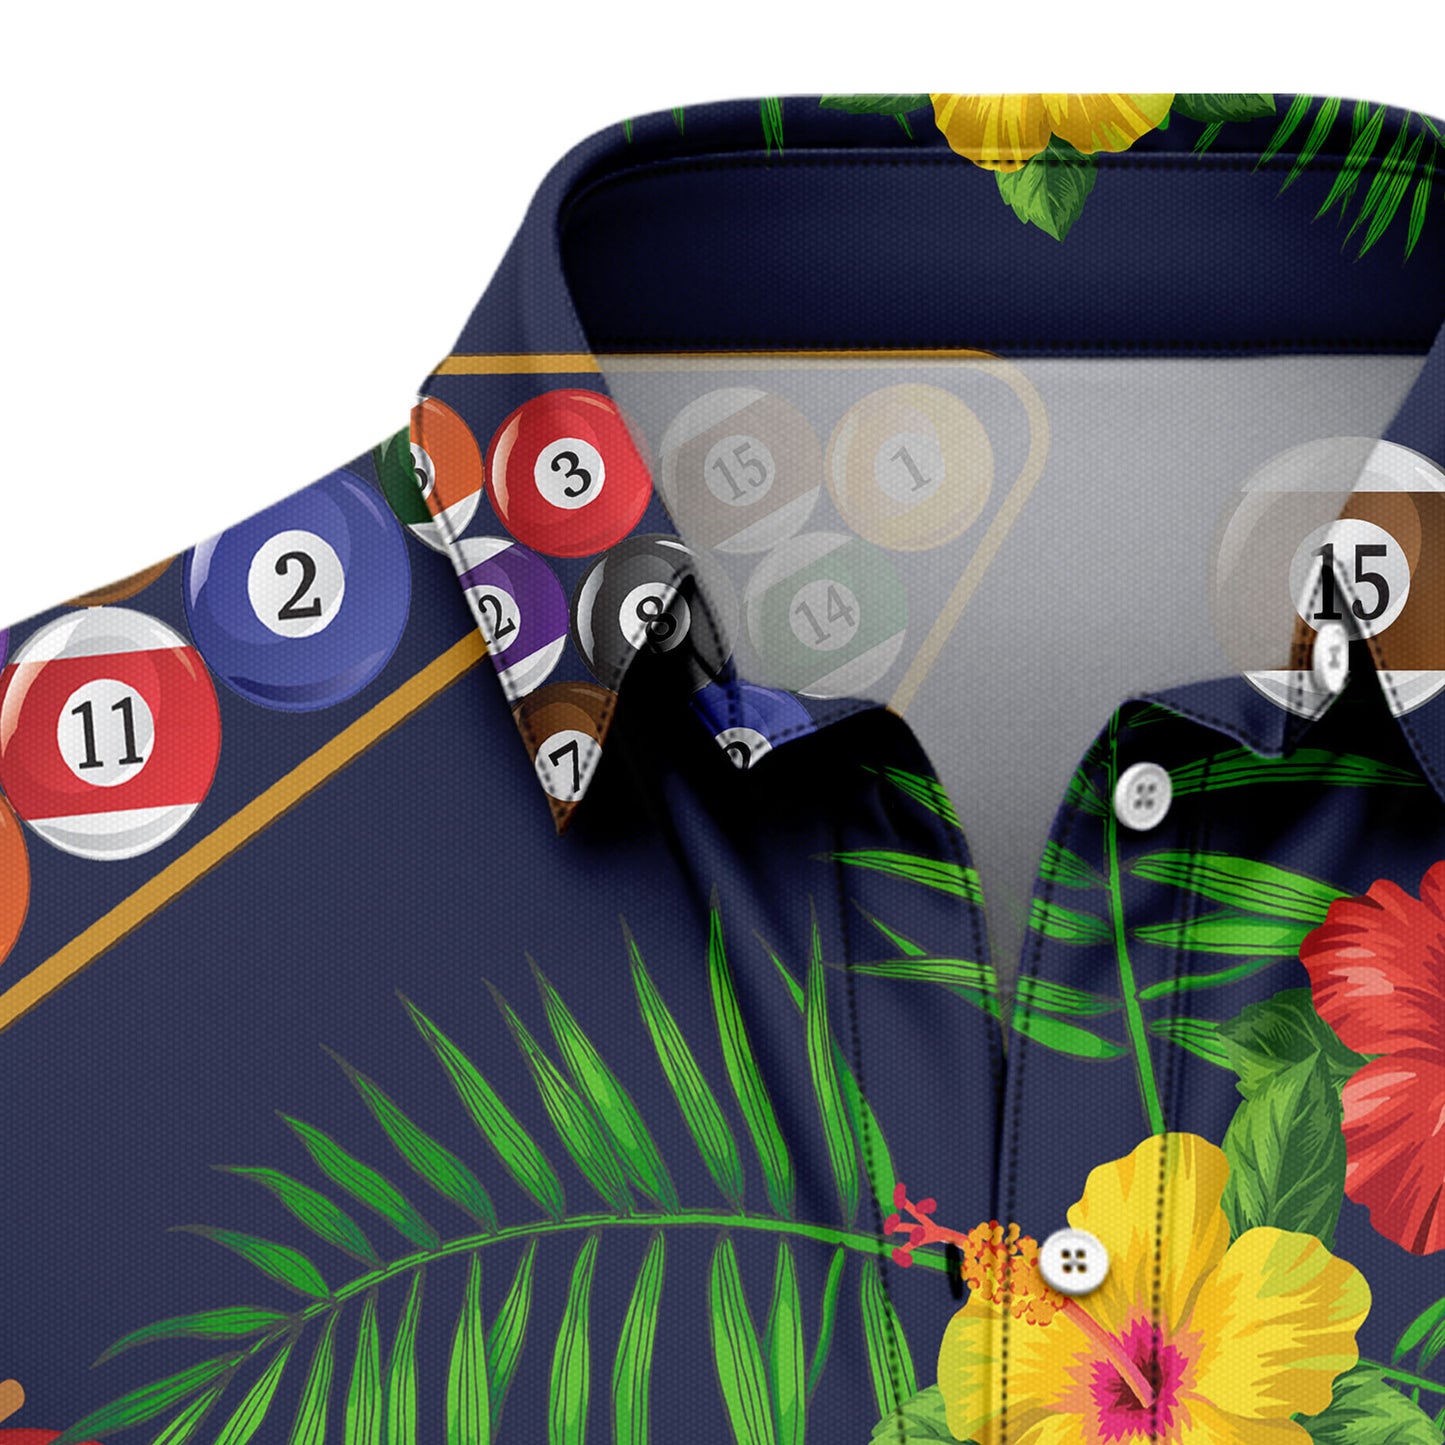 Pool Billiard Hawaii T1007 Hawaiian Shirt